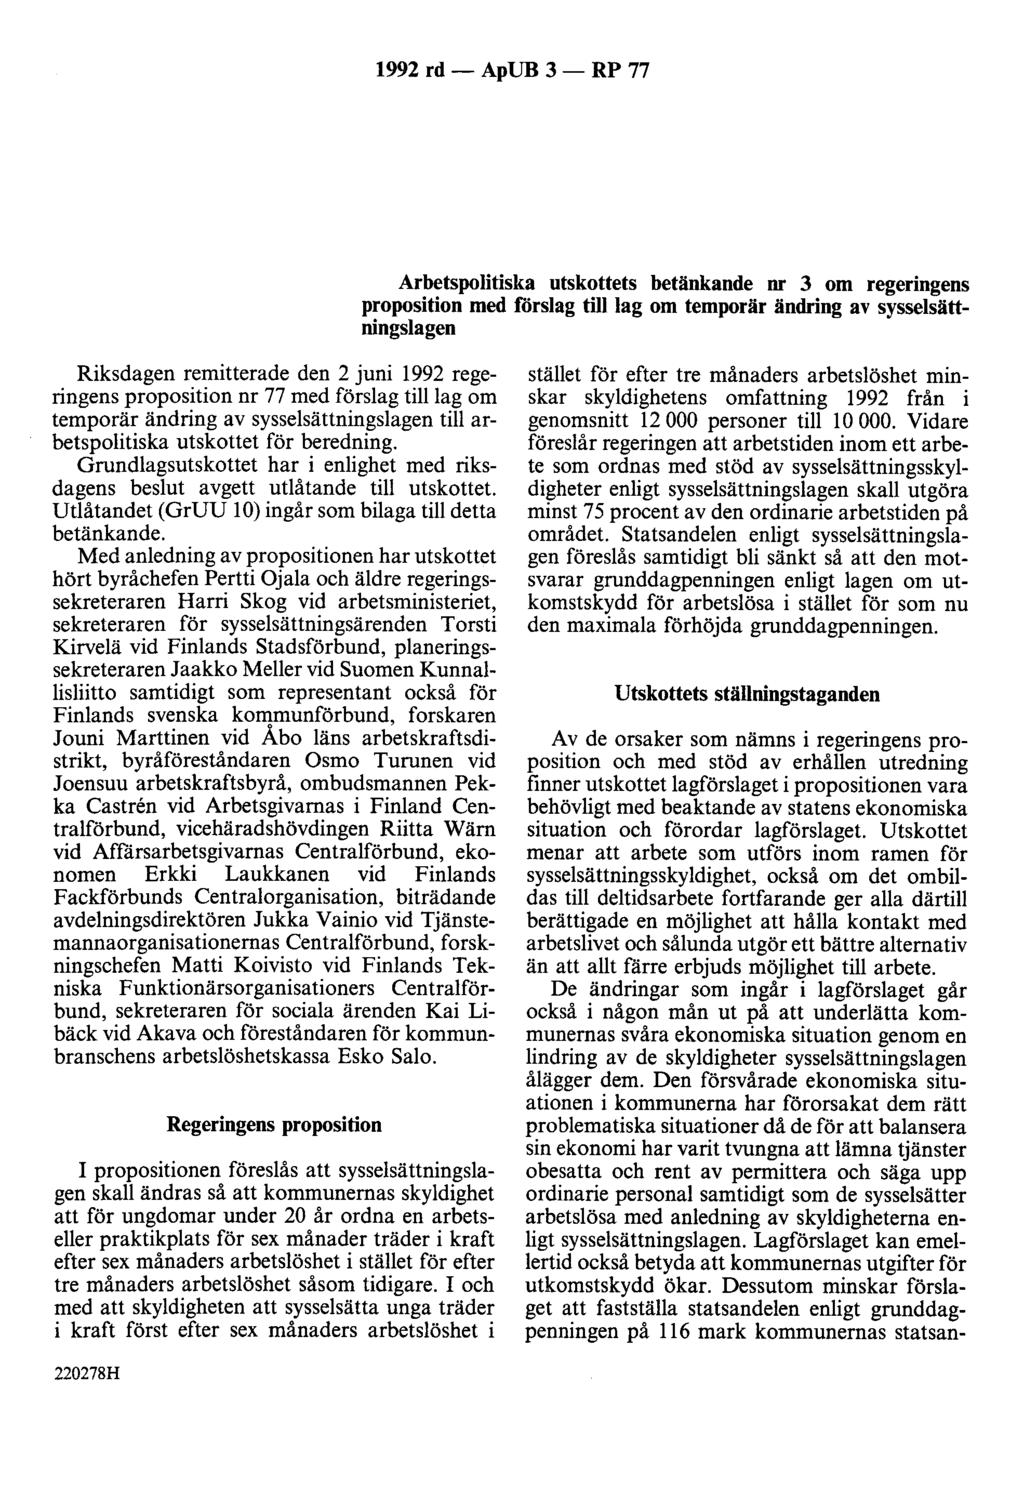 1992 rd - ApUB 3 - RP 77 Arbetspolitiska utskottets betänkande nr 3 om regeringens proposition med forslag tilllag om temporär ändring av sysselsättningslagen Riksdagen remitterade den 2 juni 1992